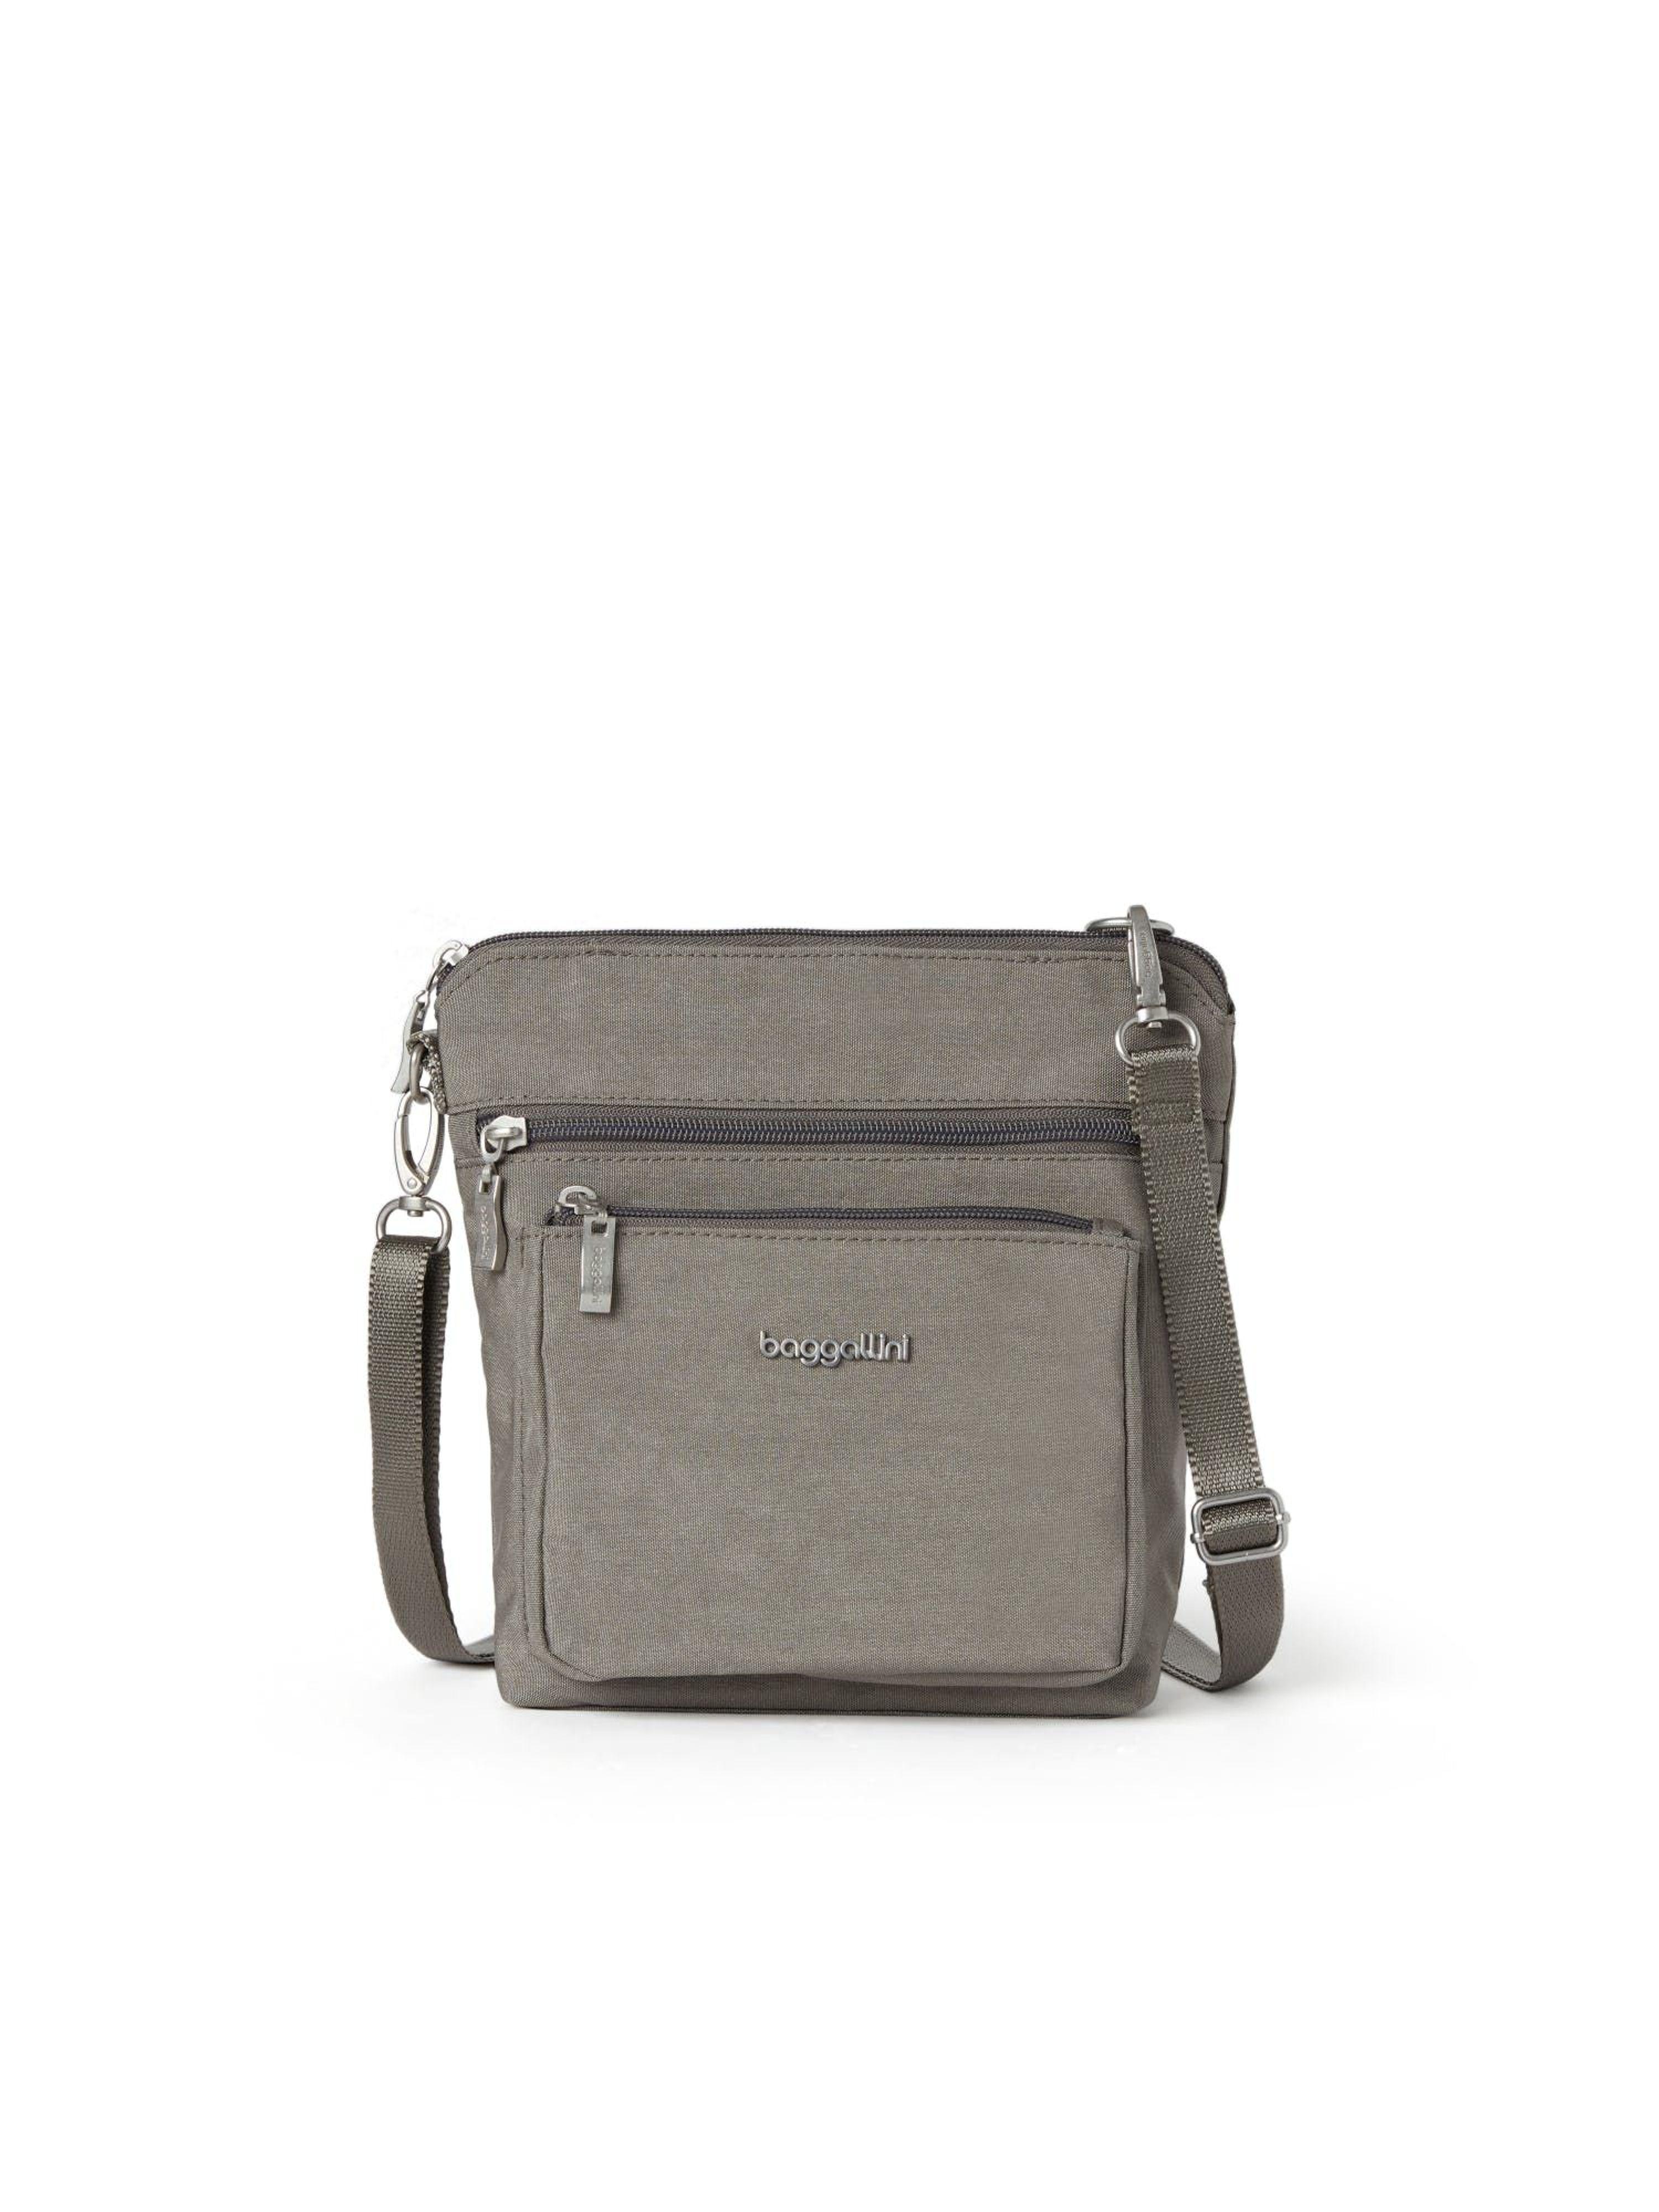 Baggallini Modern Pocket Crossbody Bag in Gray | Lyst